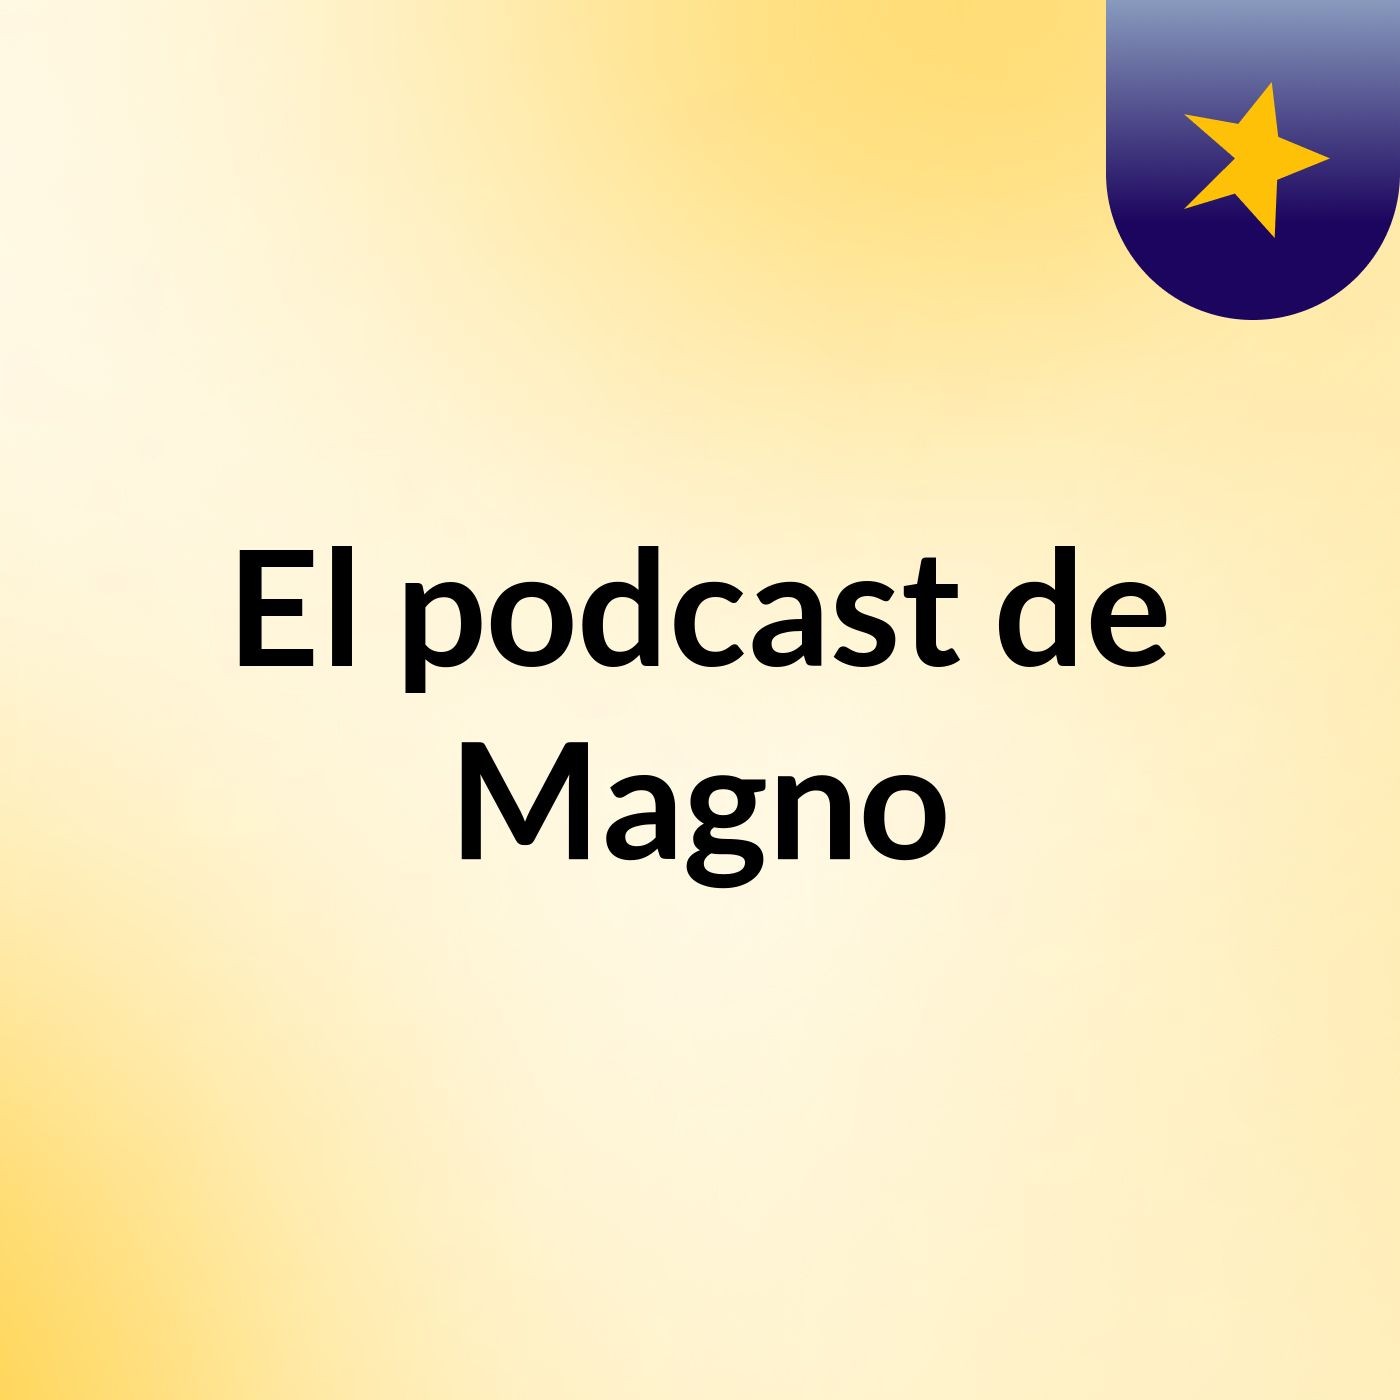 El podcast de Magno